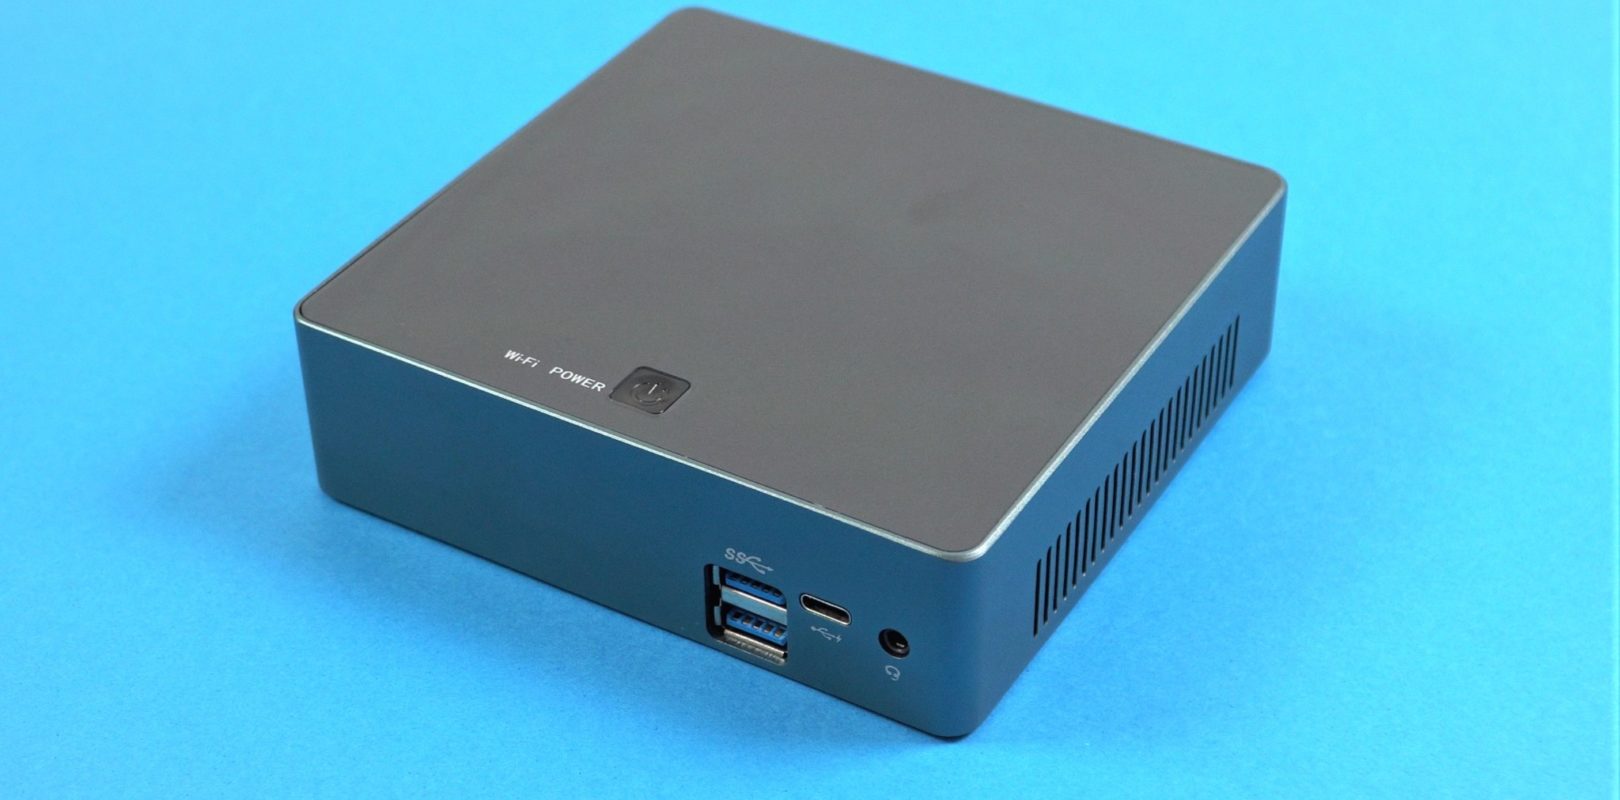 NVISEN Y-M01-8 Core i5 8250U Mini PC Review - TechTablets